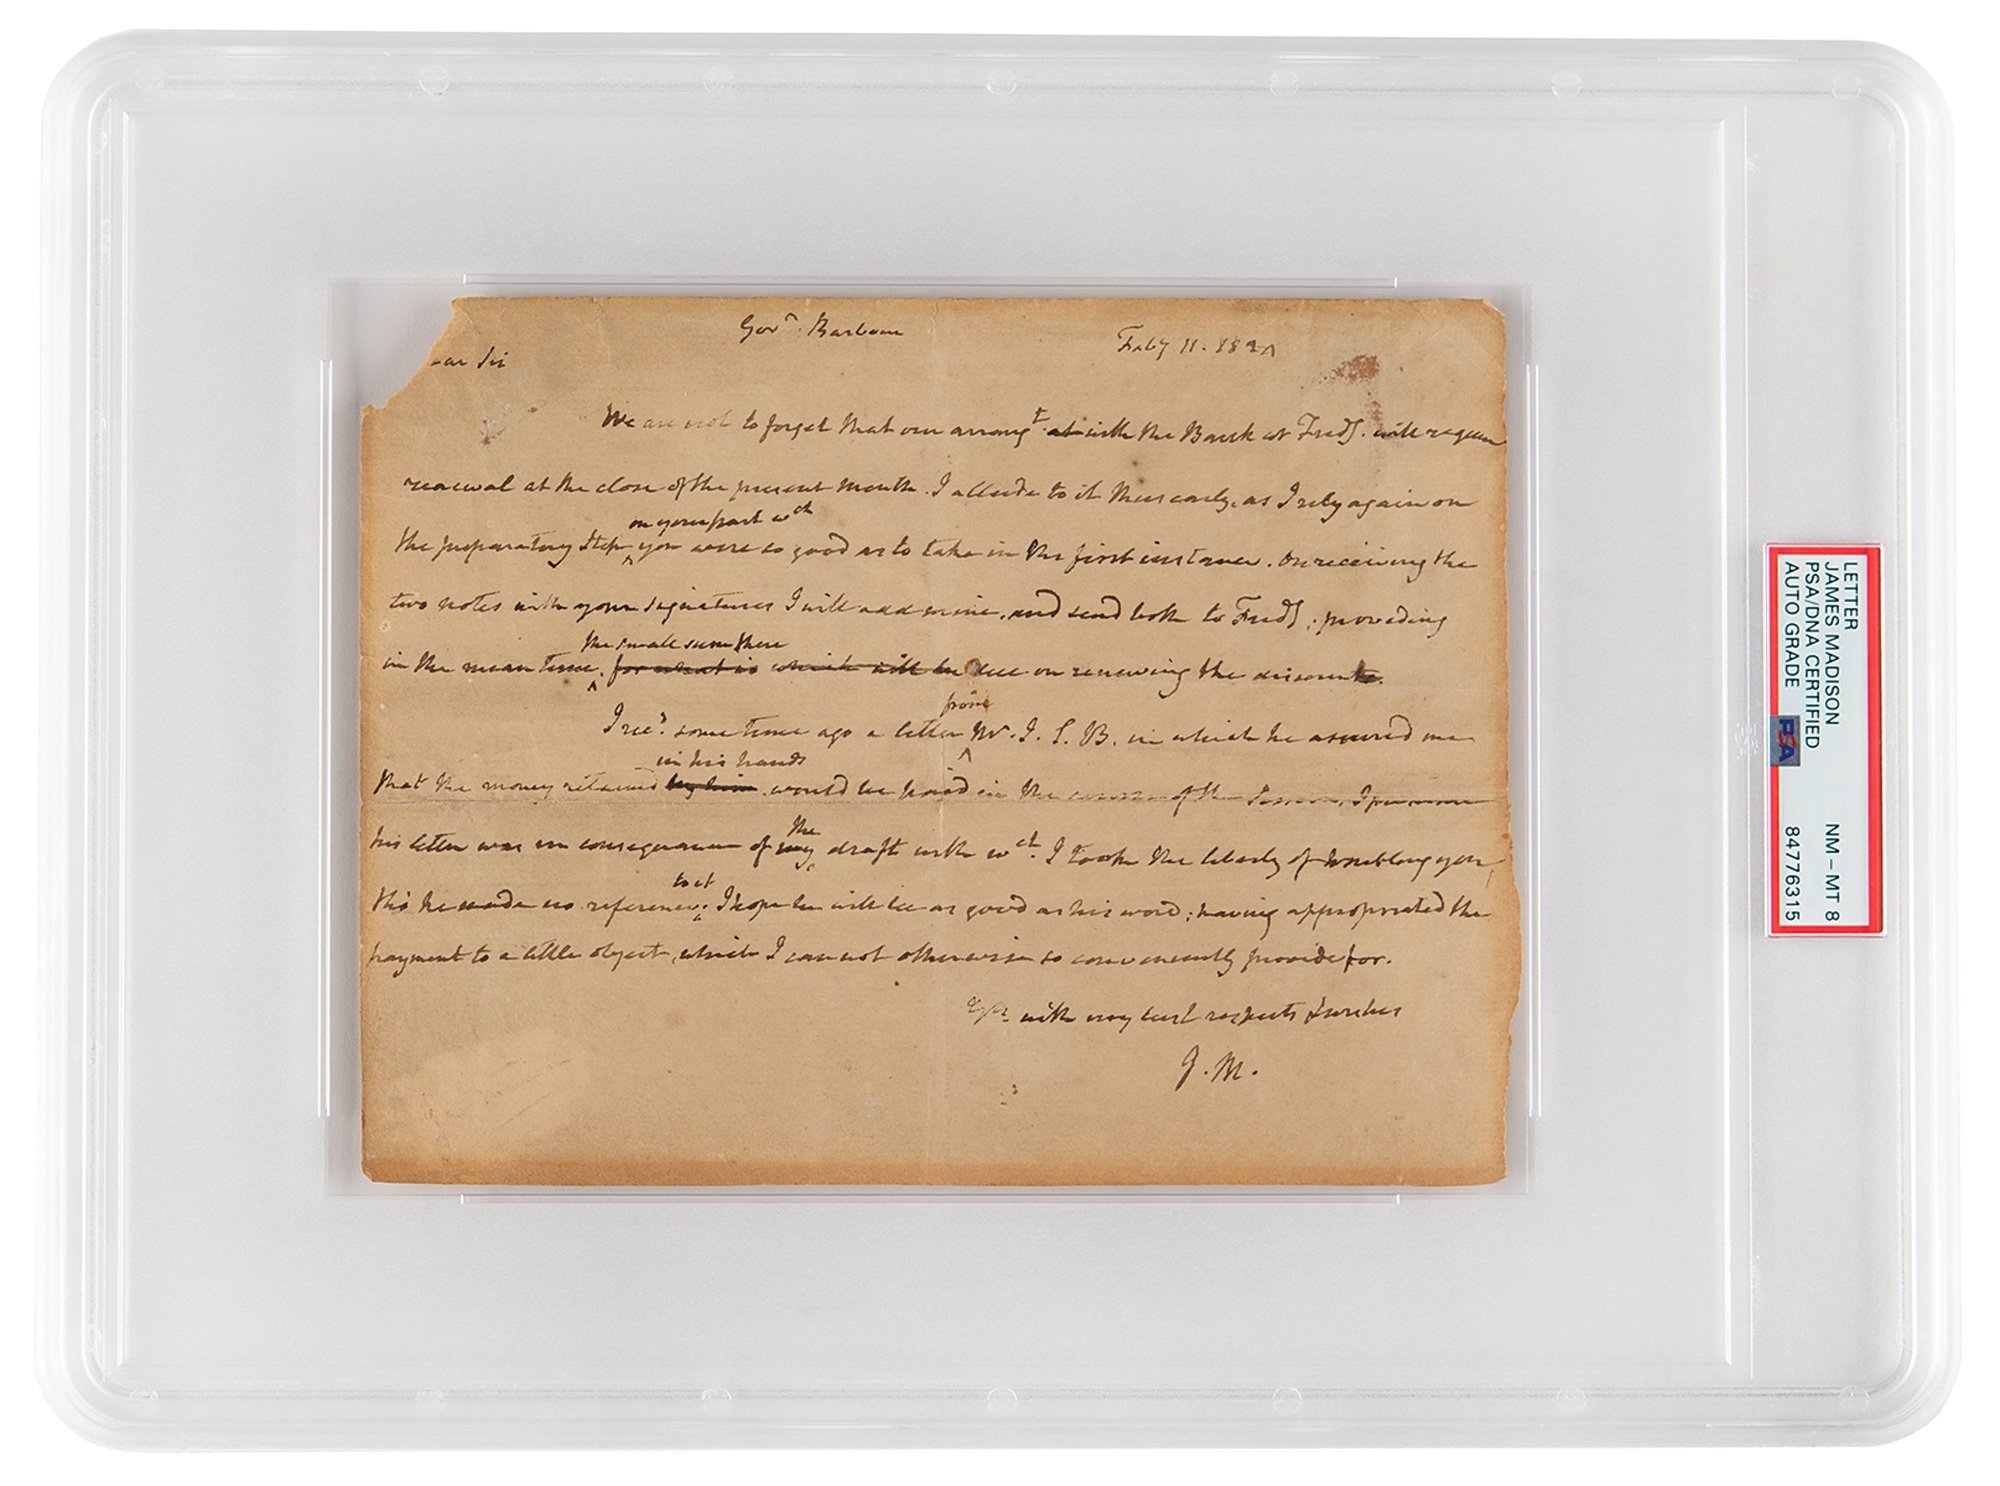 Lot #7010 James Madison Autograph Letter Signed - PSA NM-MT 8